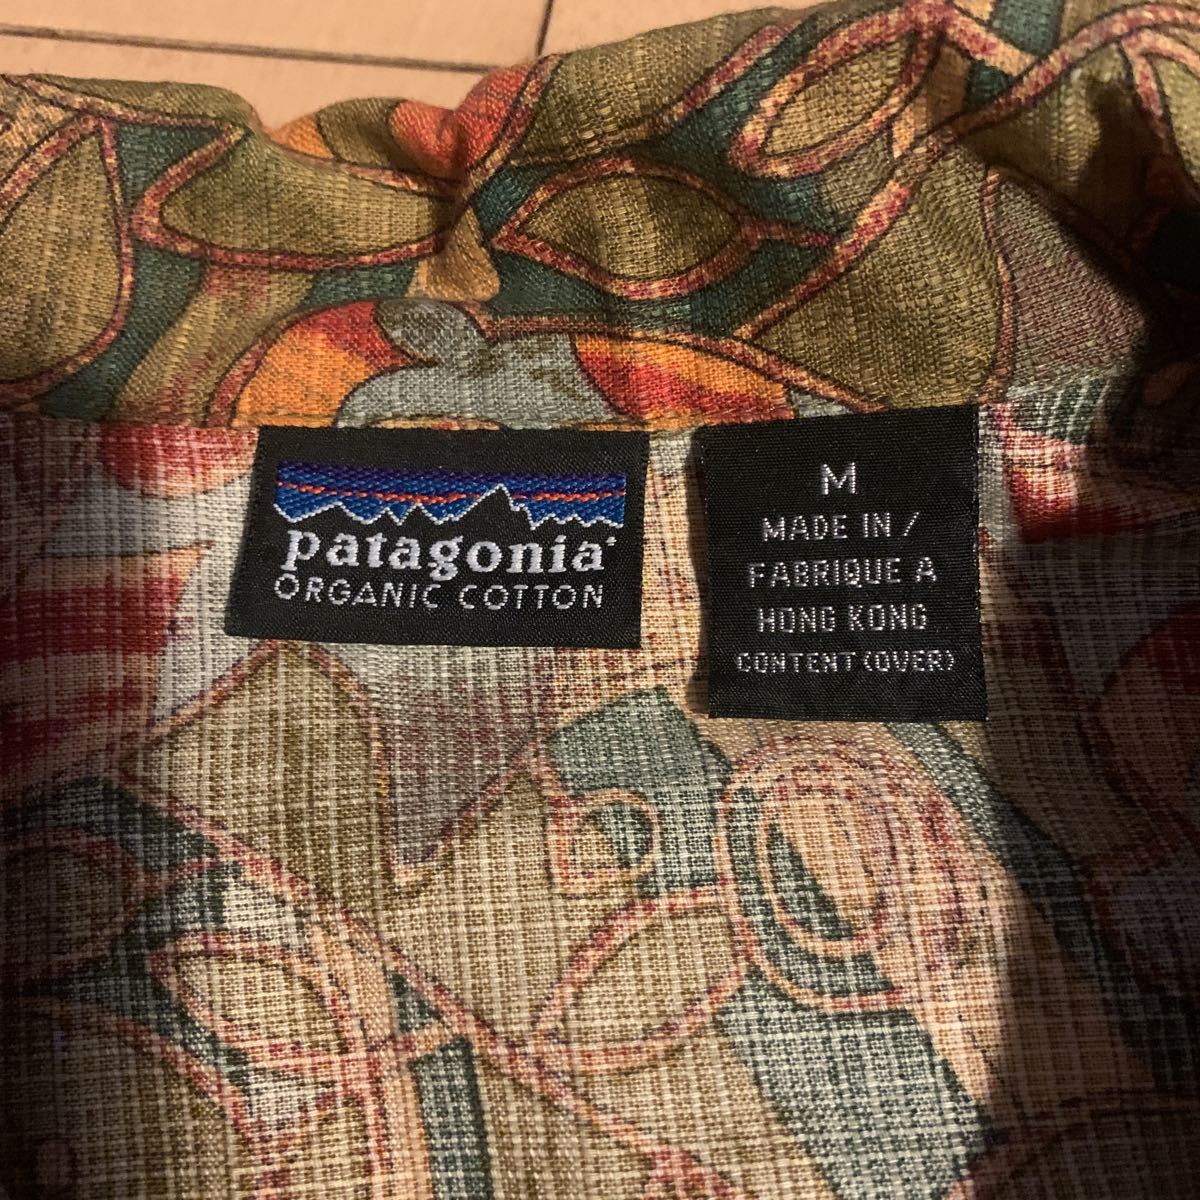 【Patagonia】パタゴニア 総柄 アロハシャツ 99年 S99 sty53302 ビンテージ コットン 半袖シャツ M_画像4